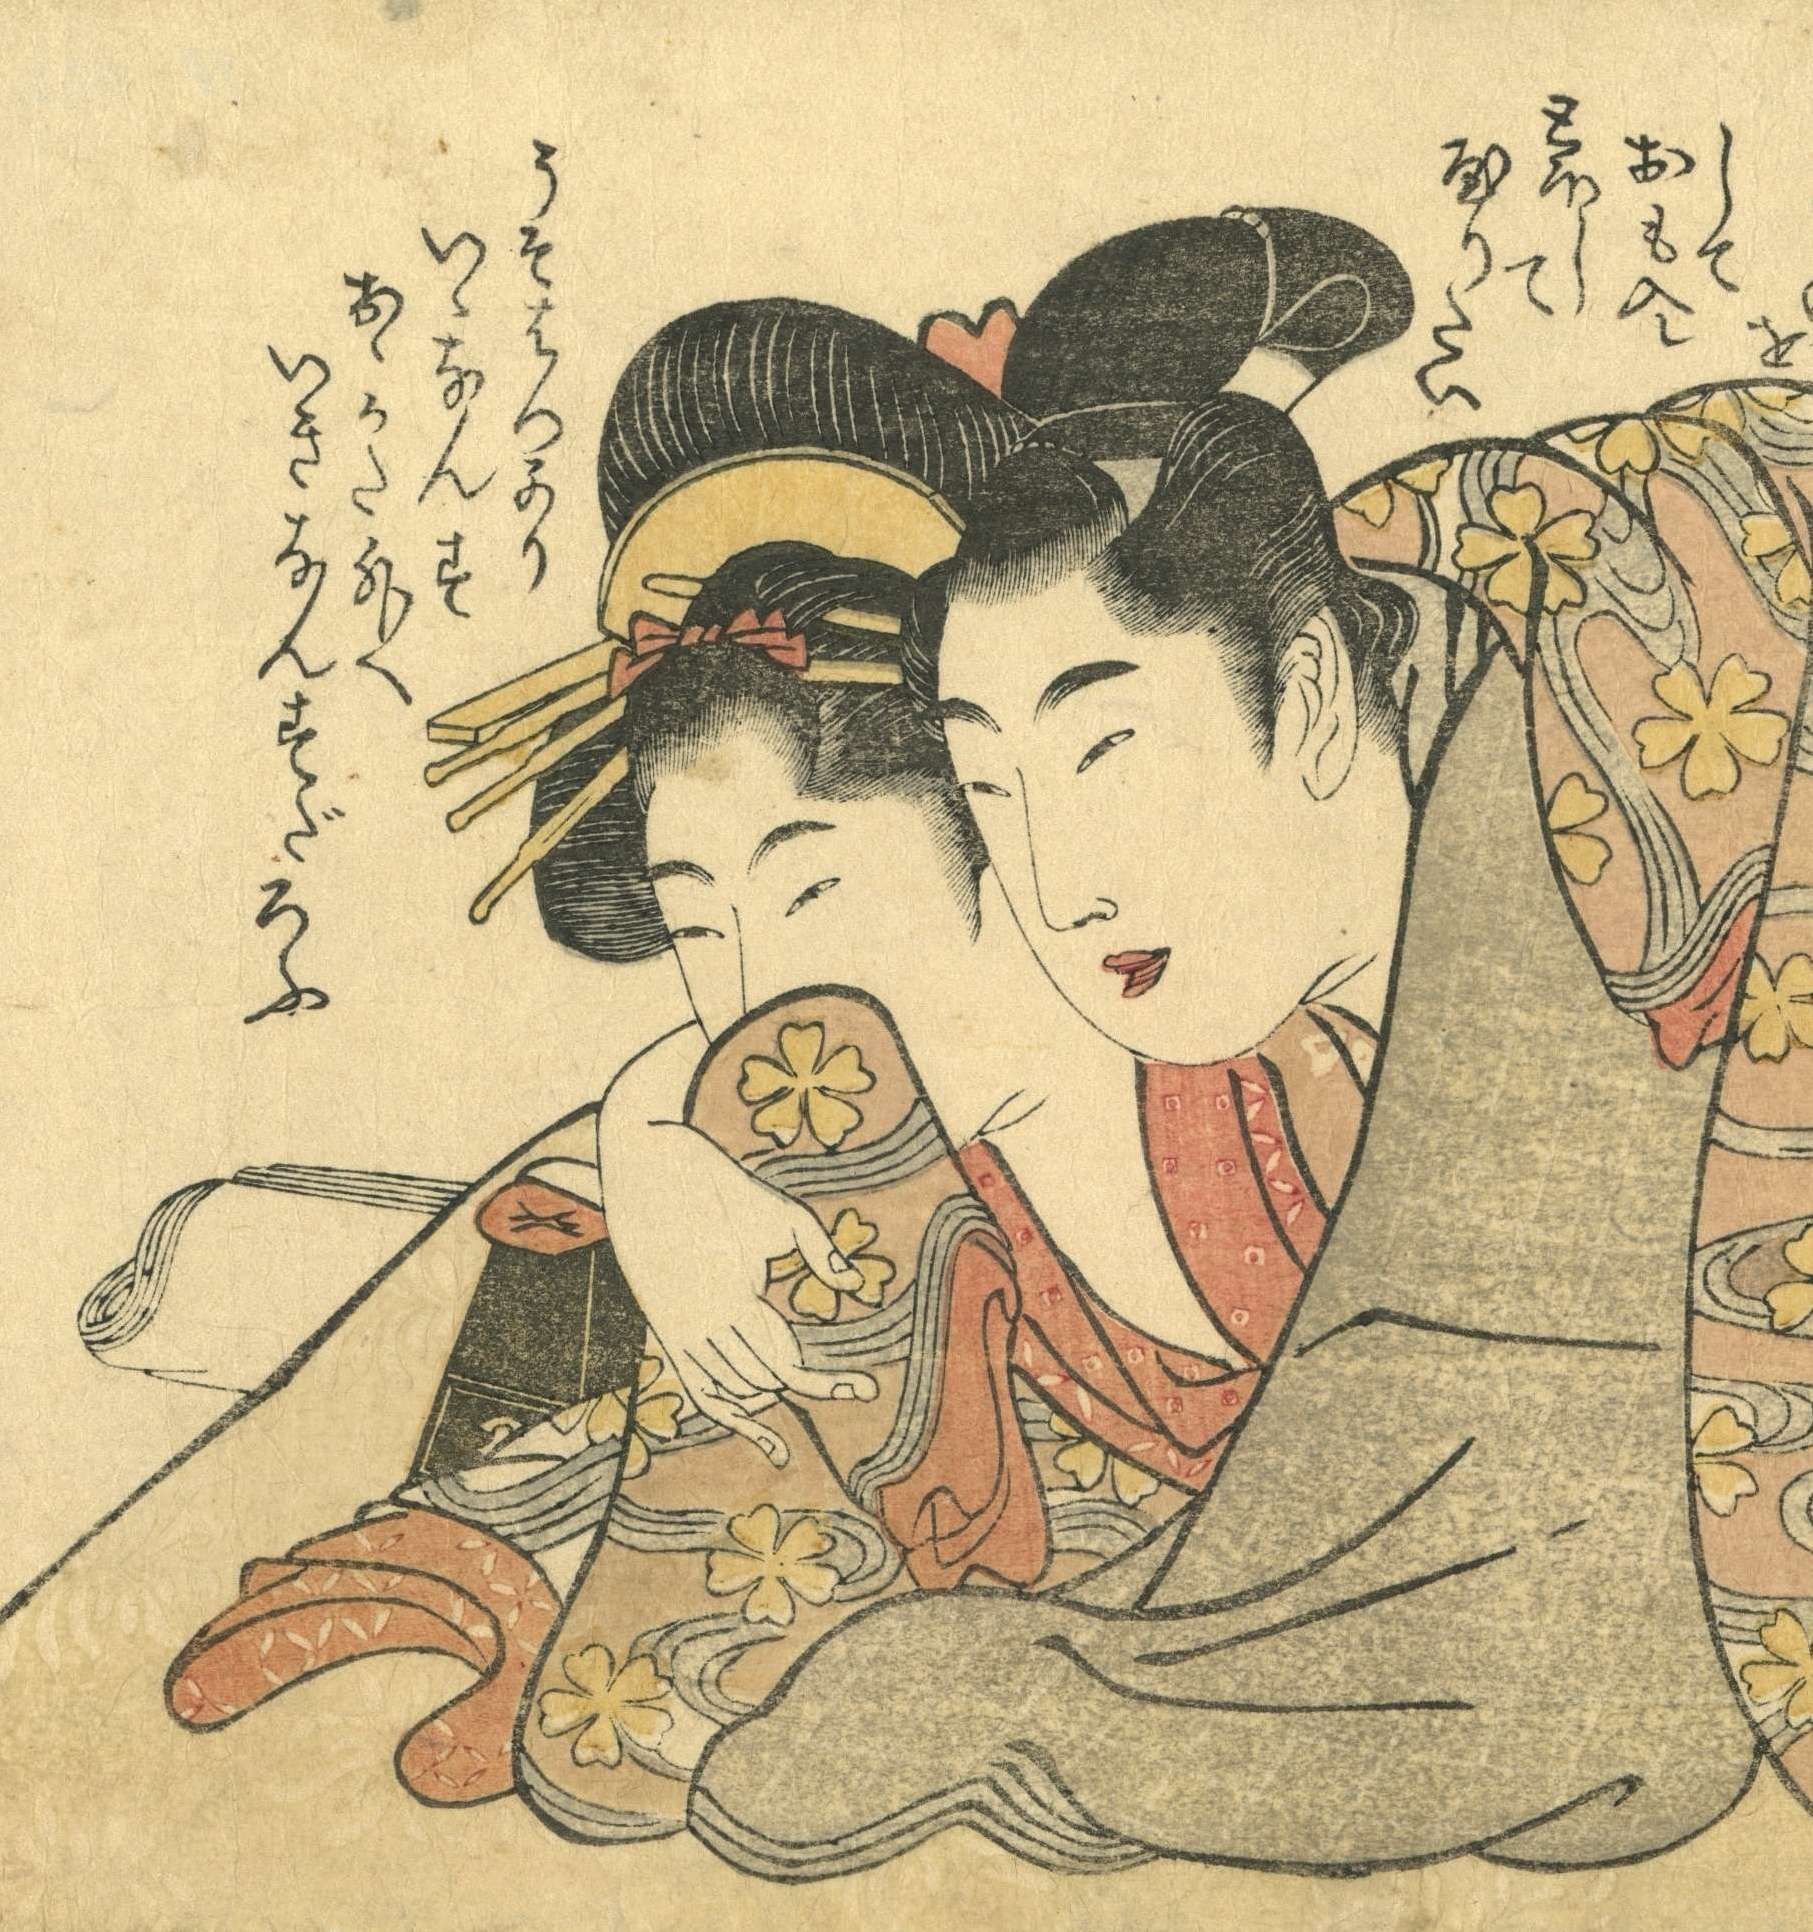 Kitagawa Utamaro Series Of Horizontal O Hosoban Shunga Prints Circa 1803 Varshavsky Collection